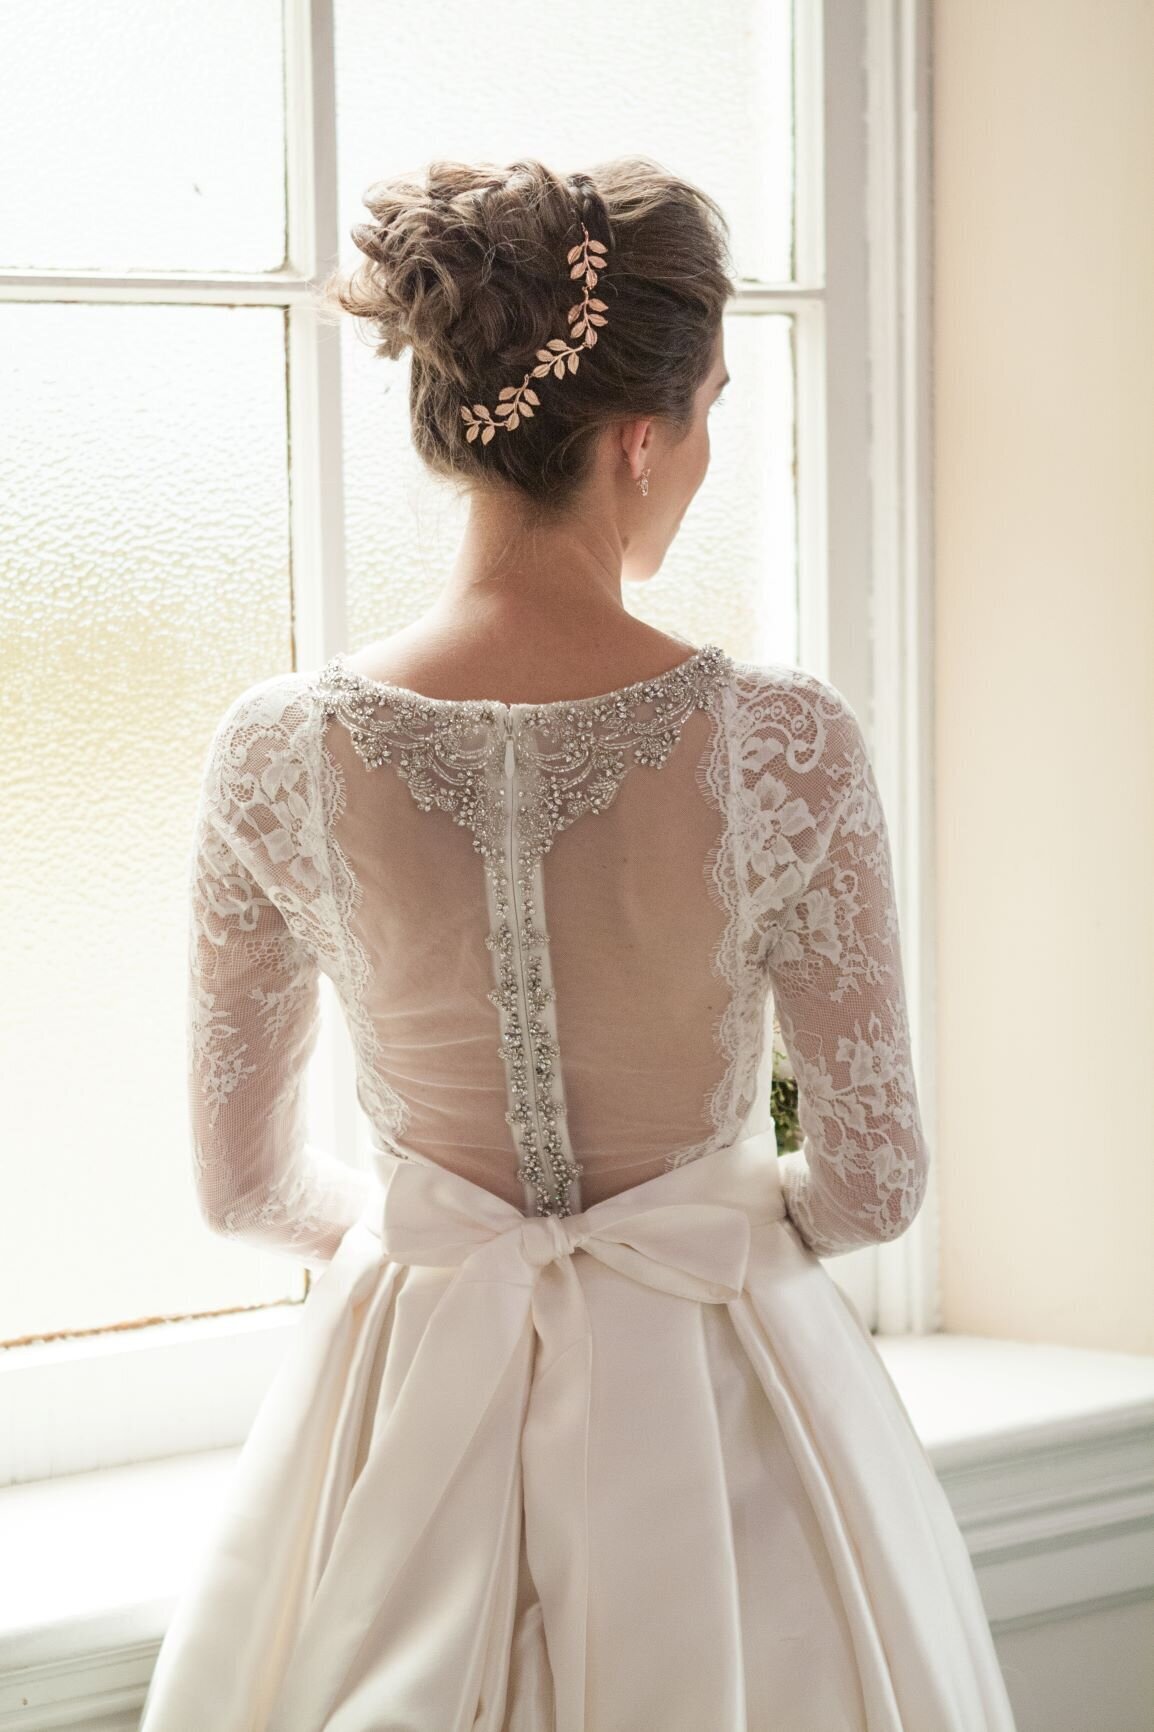 Iowa-bride-in-gown